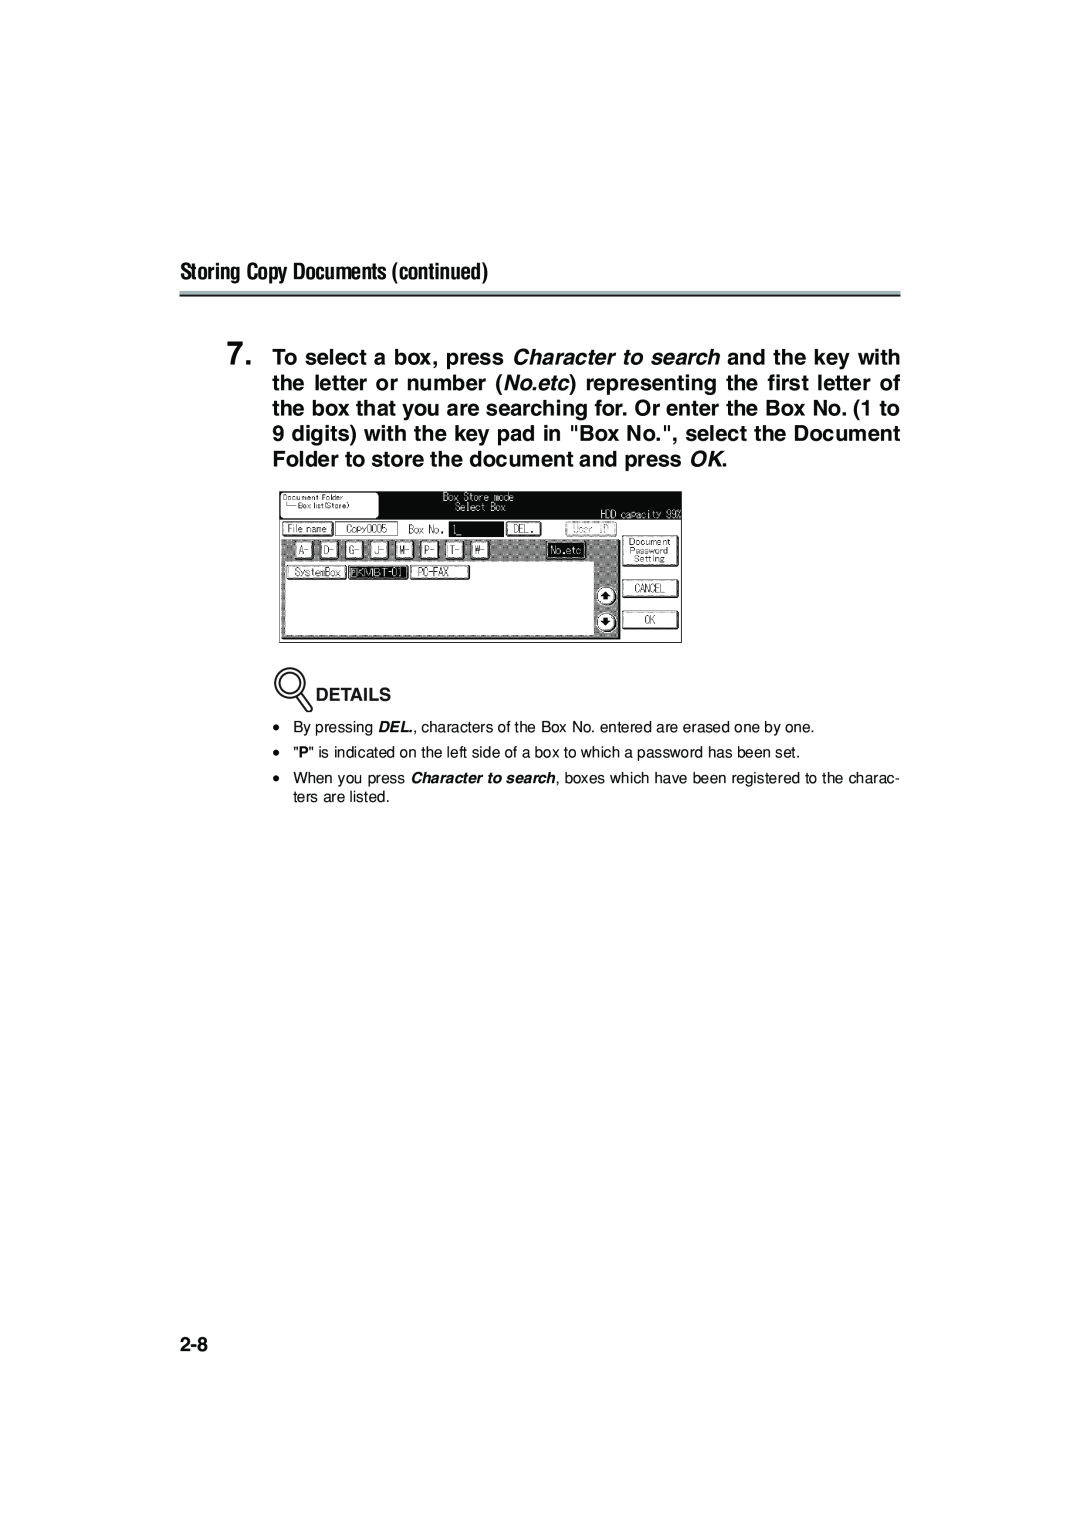 Konica Minolta 7222 manual Storing Copy Documents continued 